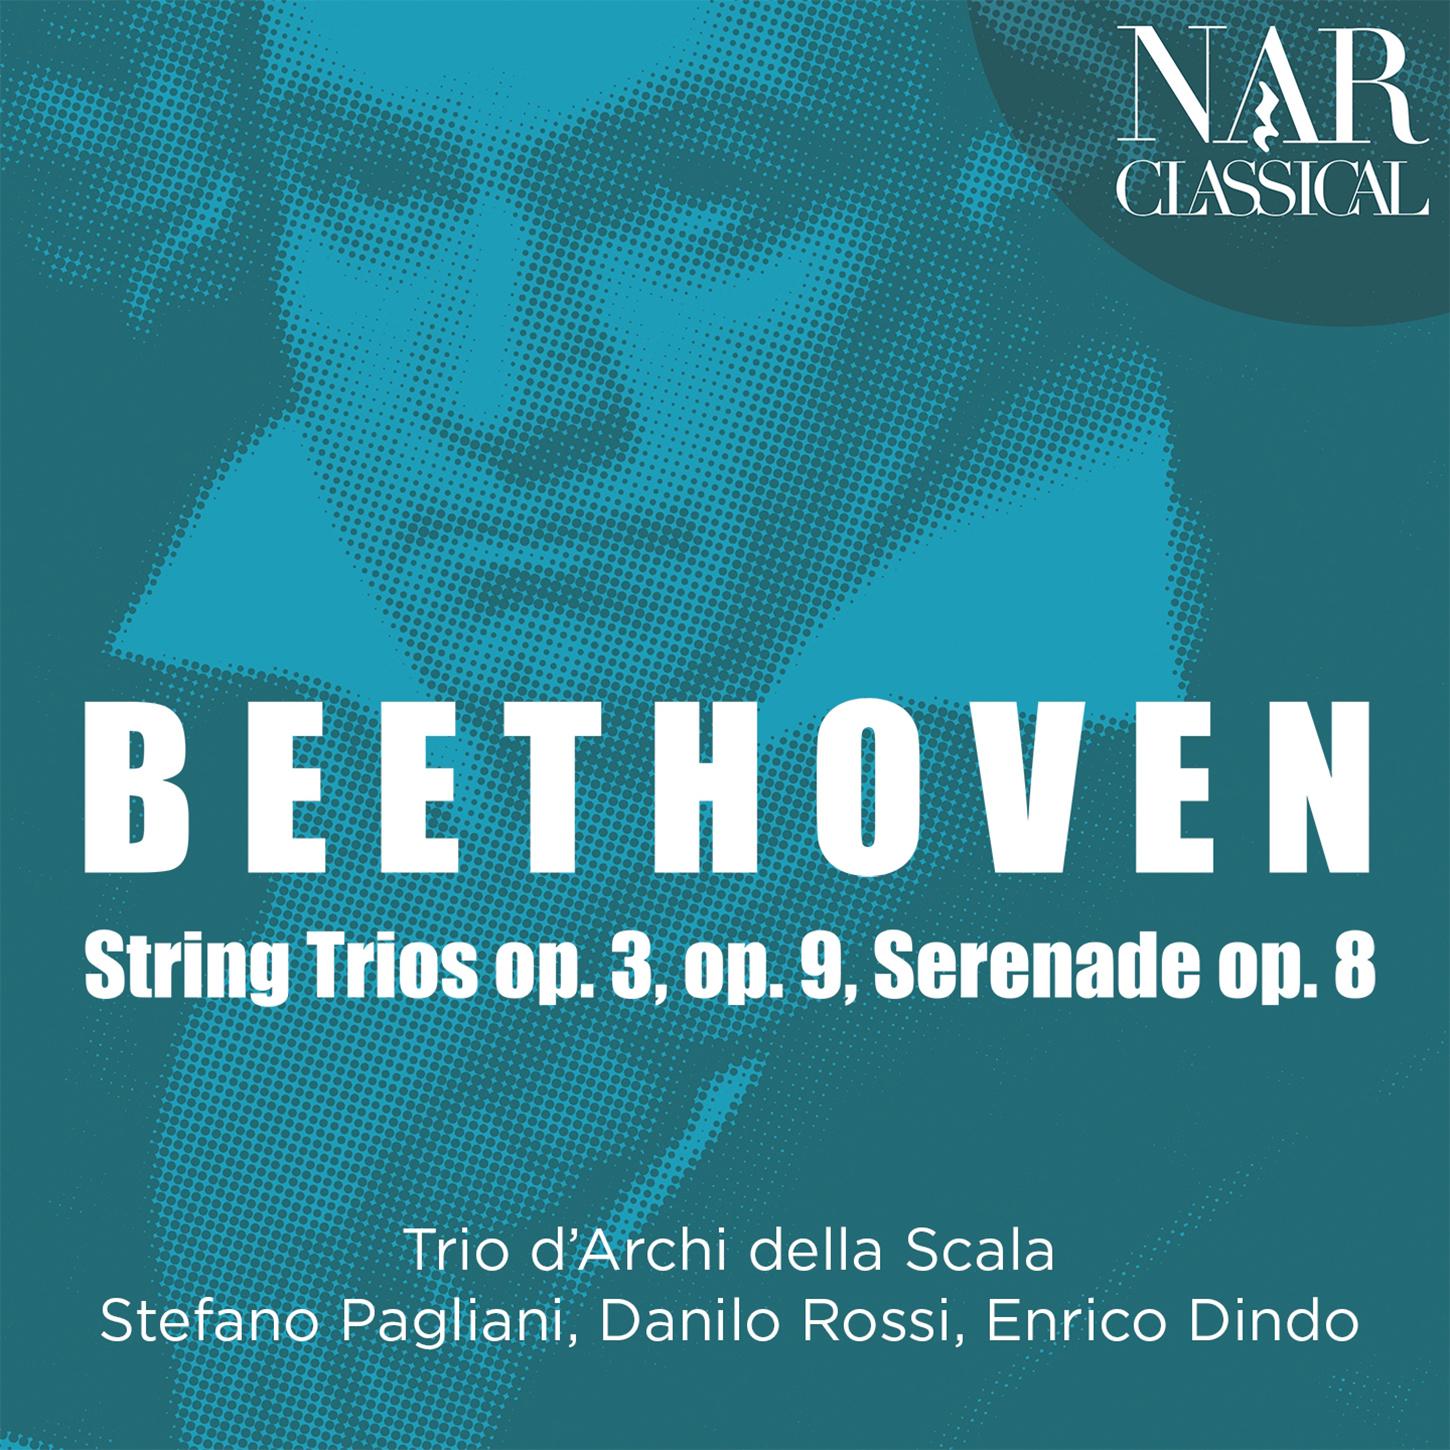 Trio d'Archi della Scala - String Trio in G Major, Op. 9 No. 1:No. 1, Adagio - Allegro con brio